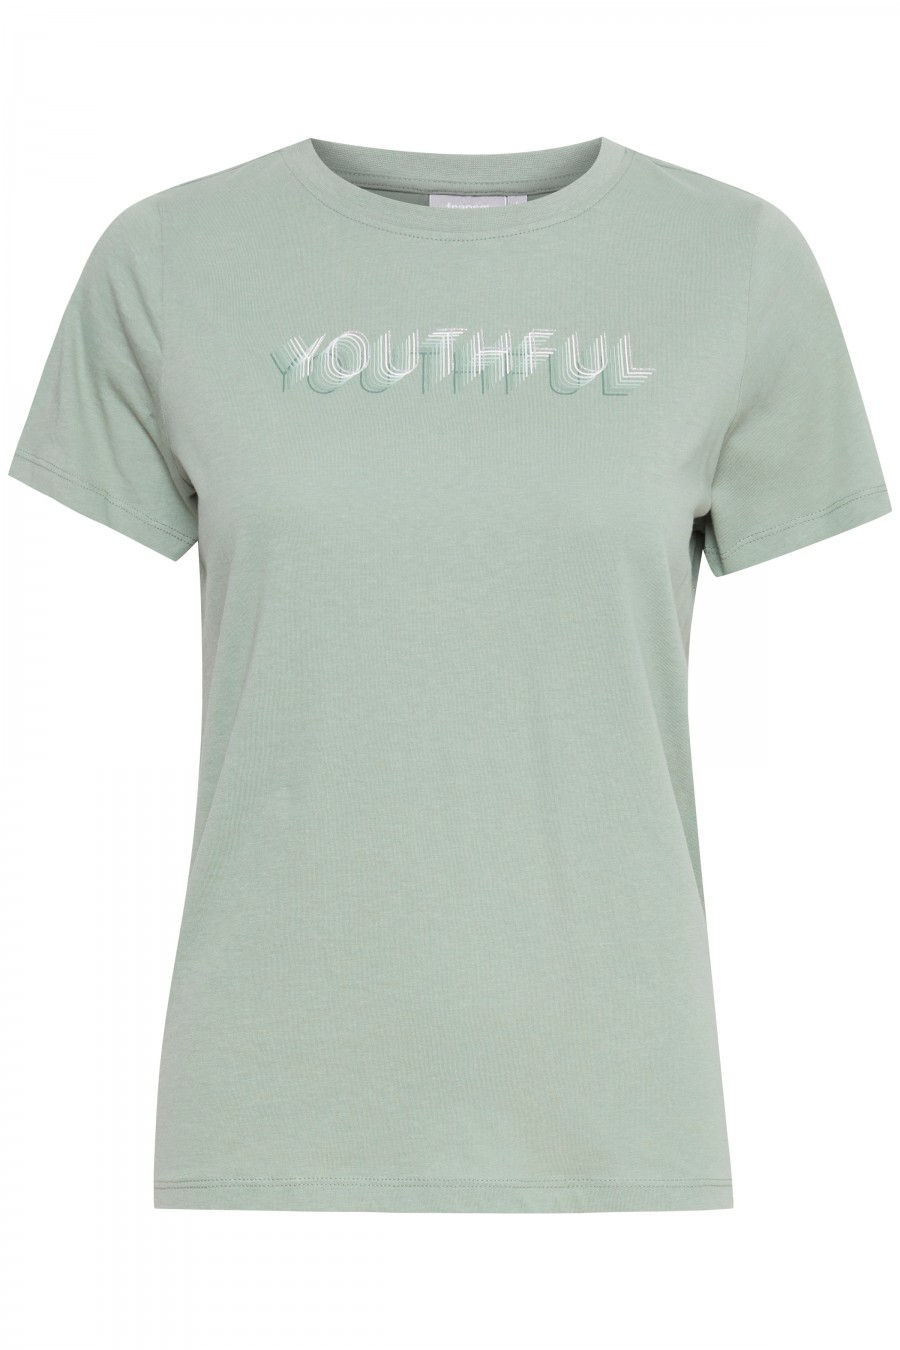 t-shirt youthful